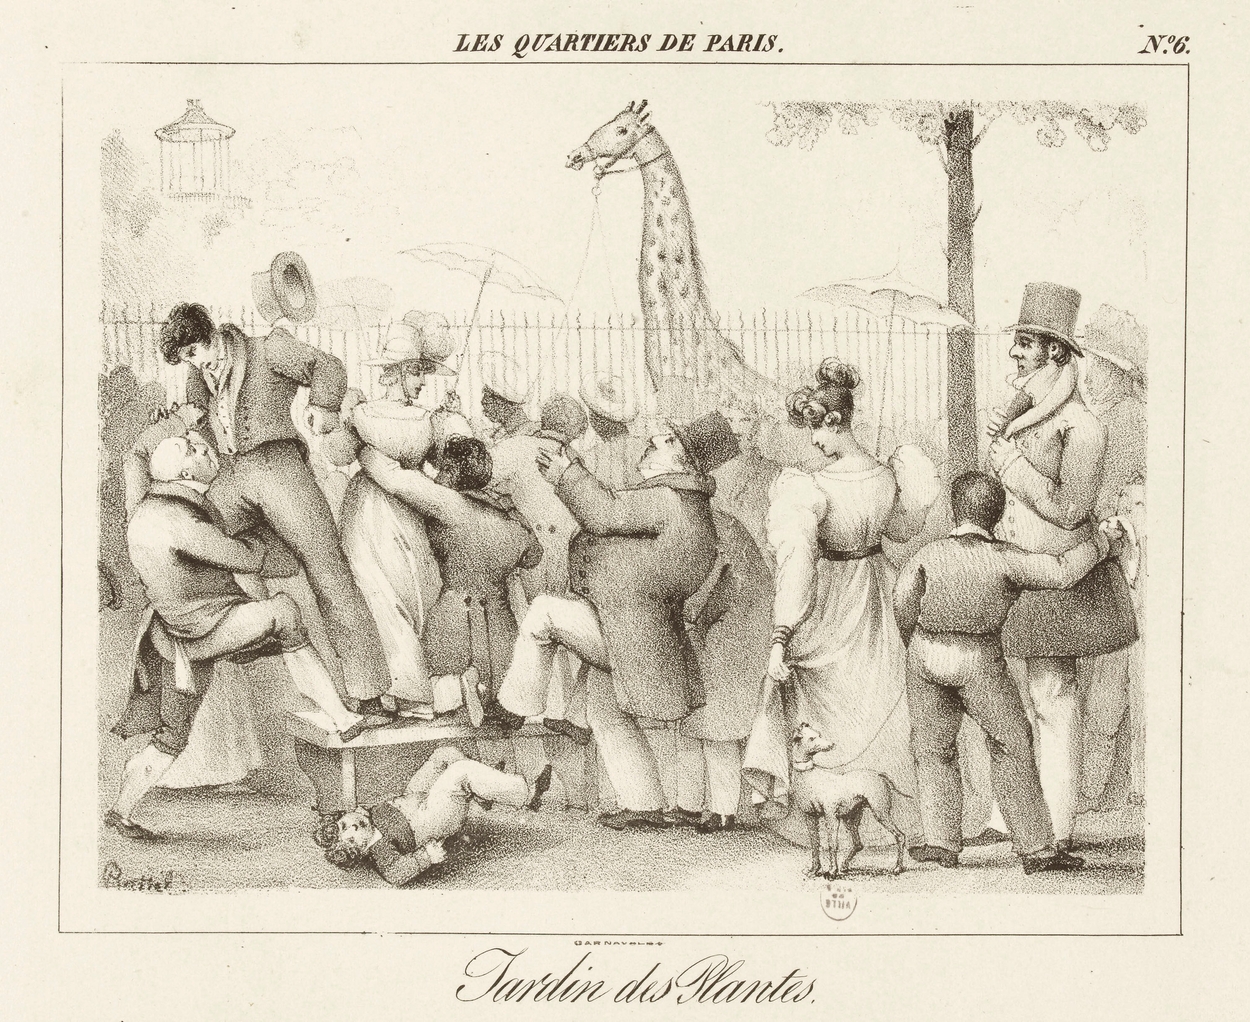 Het publiek verdringt zich voor de hekken van de Jardin des Plantes, Henri Daniel Plattel, lithografie, 1827